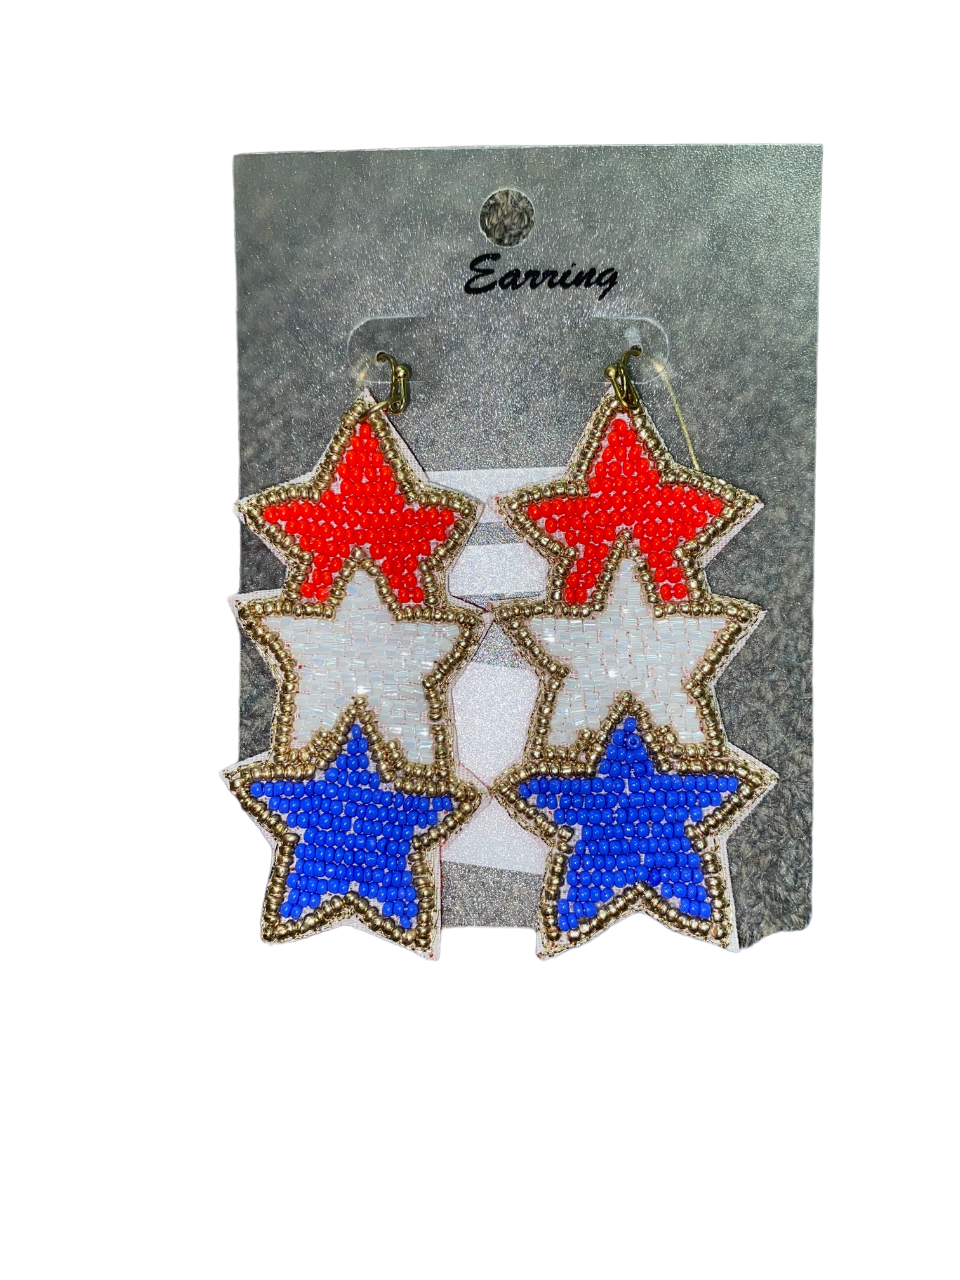 USA Beaded Star Earrings